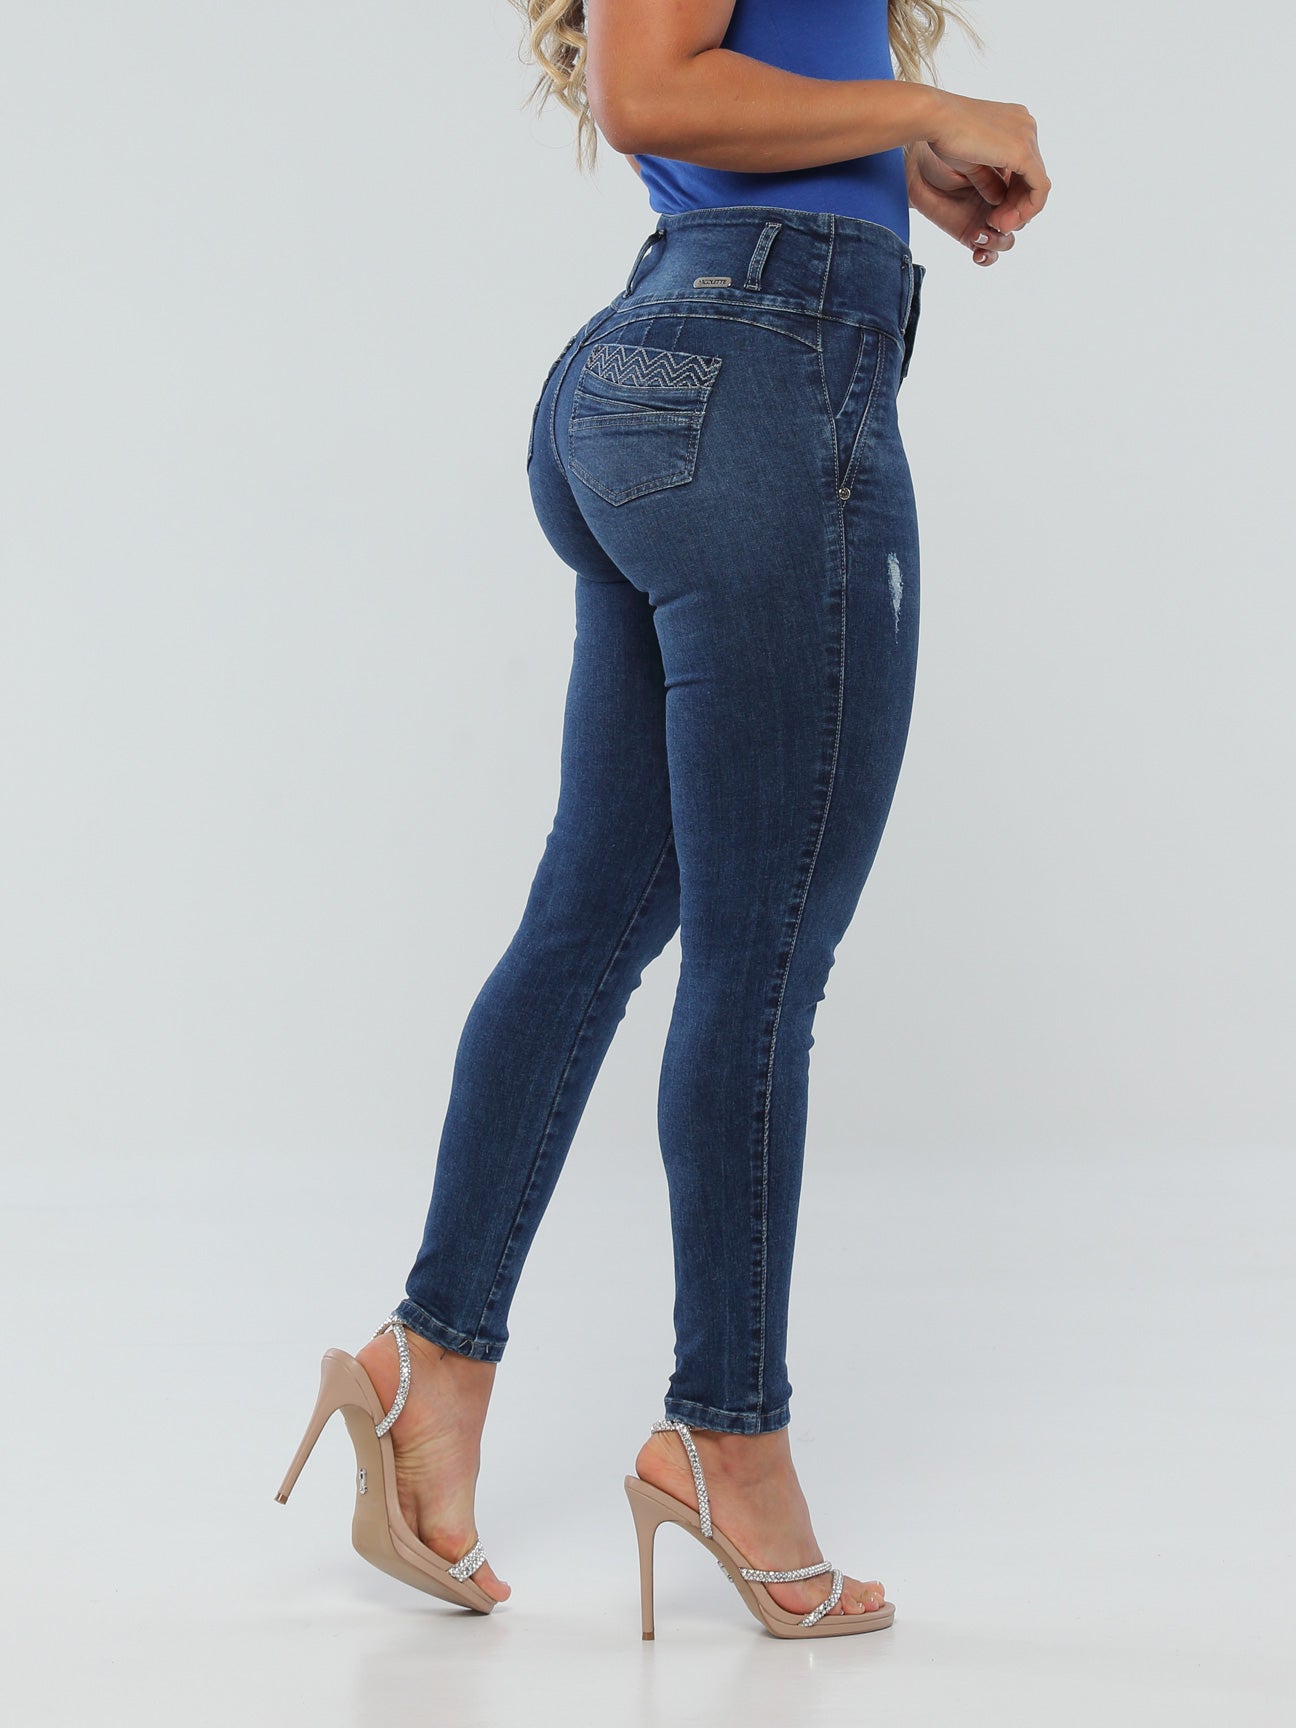 Maria Jose Butt Lift Jeans 15558